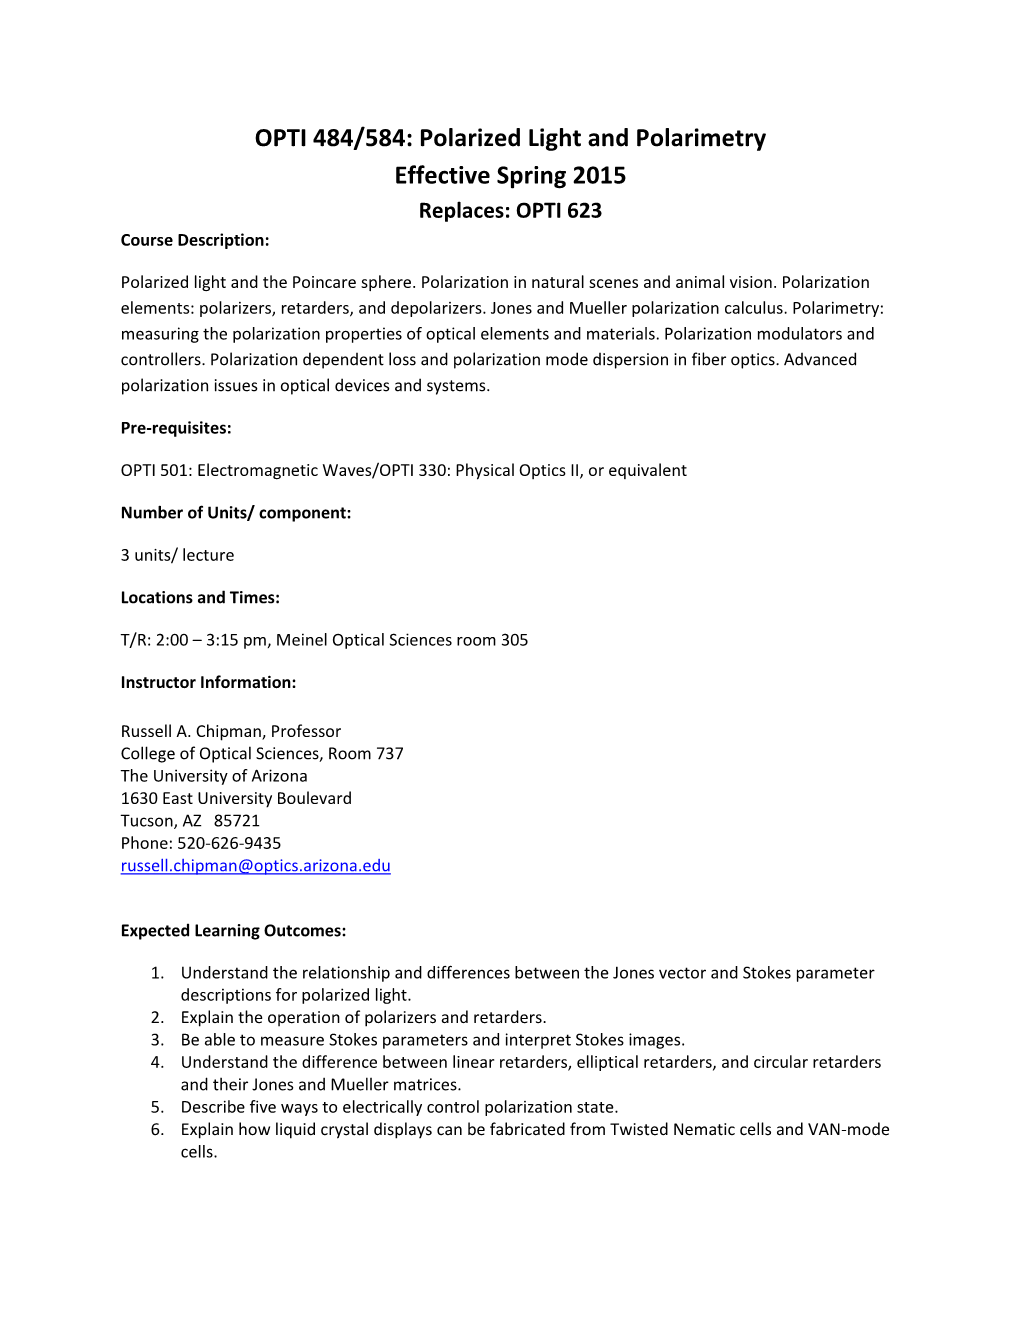 OPTI 484/584: Polarized Light and Polarimetry Effective Spring 2015 Replaces: OPTI 623 Course Description